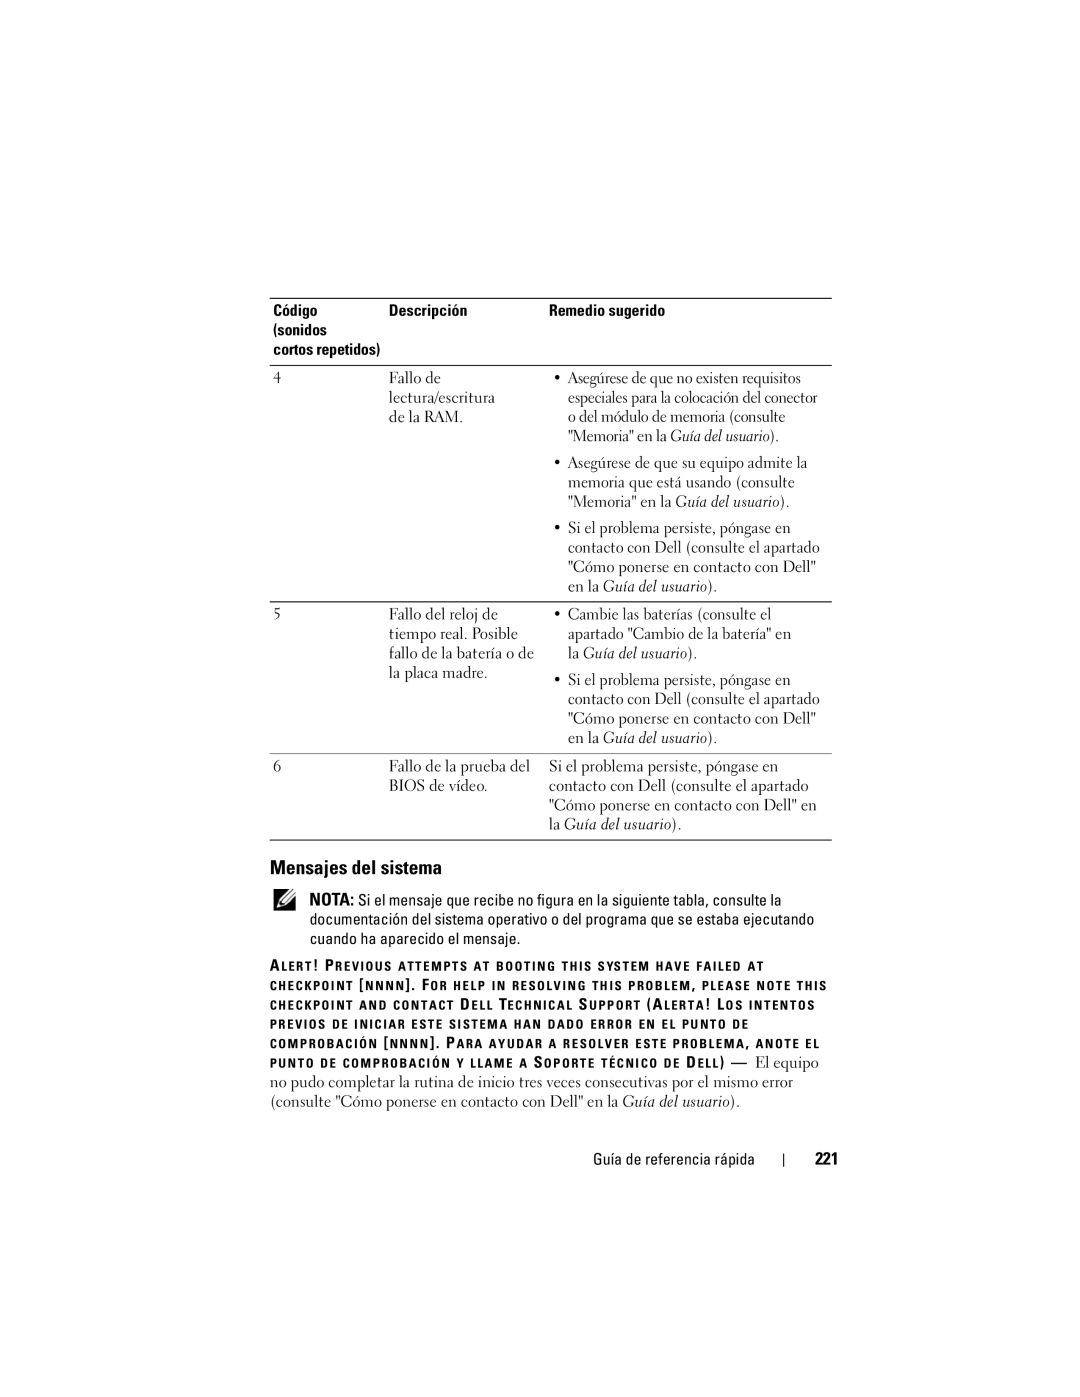 Dell DCDO manual Mensajes del sistema, 221, Código Descripción Remedio sugerido Sonidos 